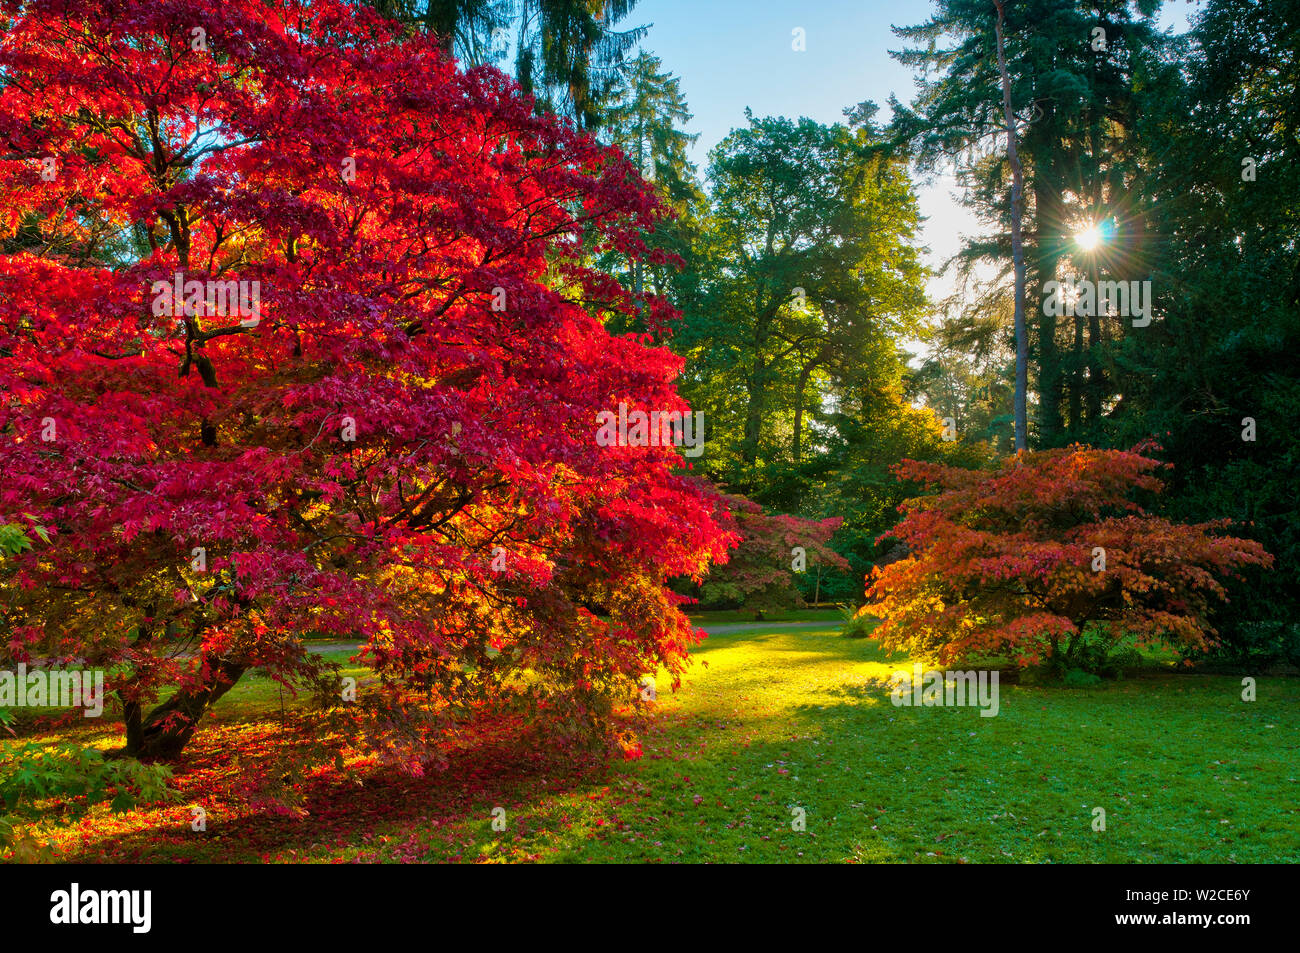 UK, England, Gloucestershire, Westonbirt Arboretum Stock Photo